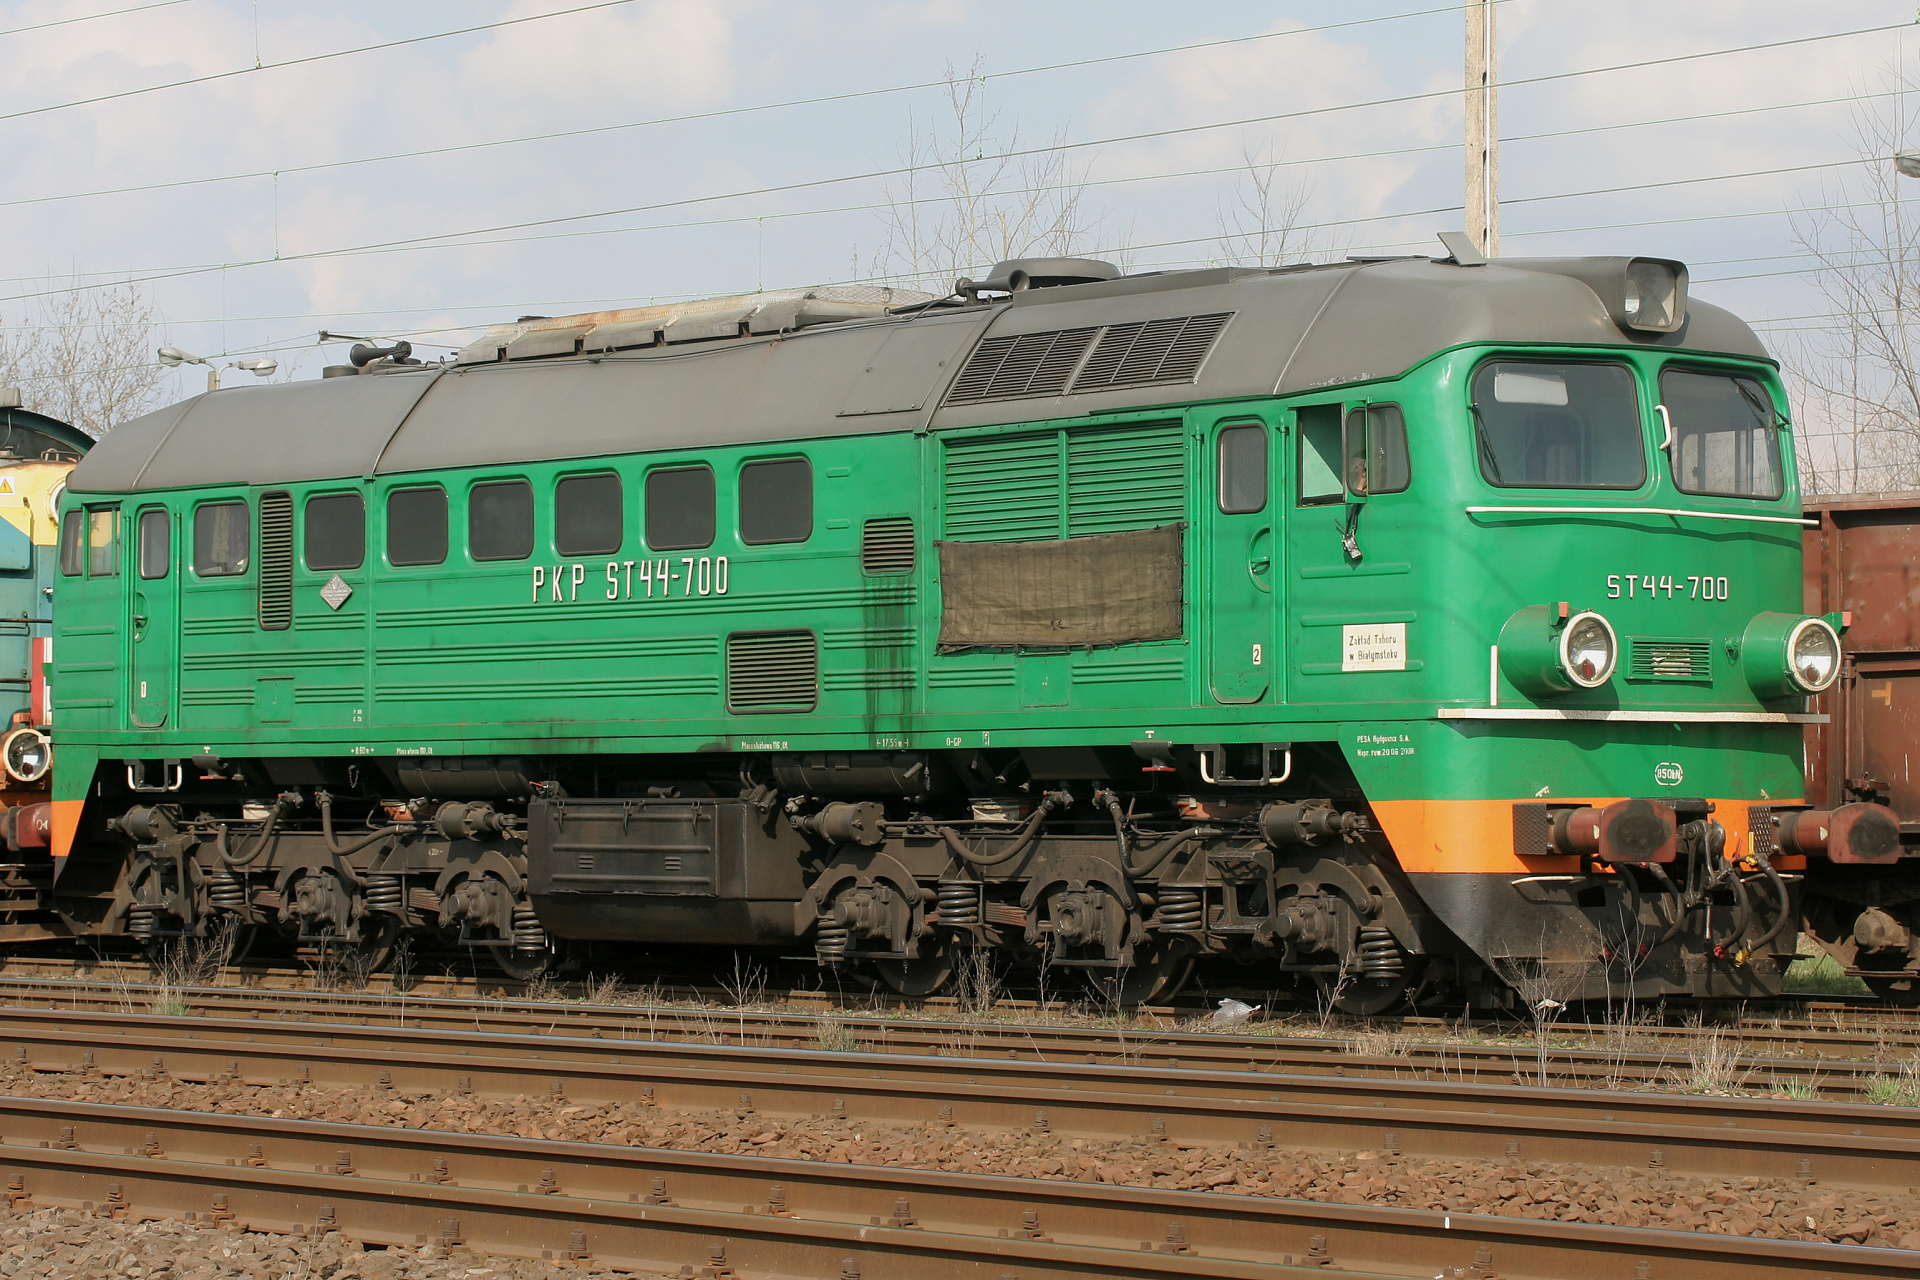 ST44-700 (Pojazdy » Pociągi i lokomotywy » ЛТЗ M62)